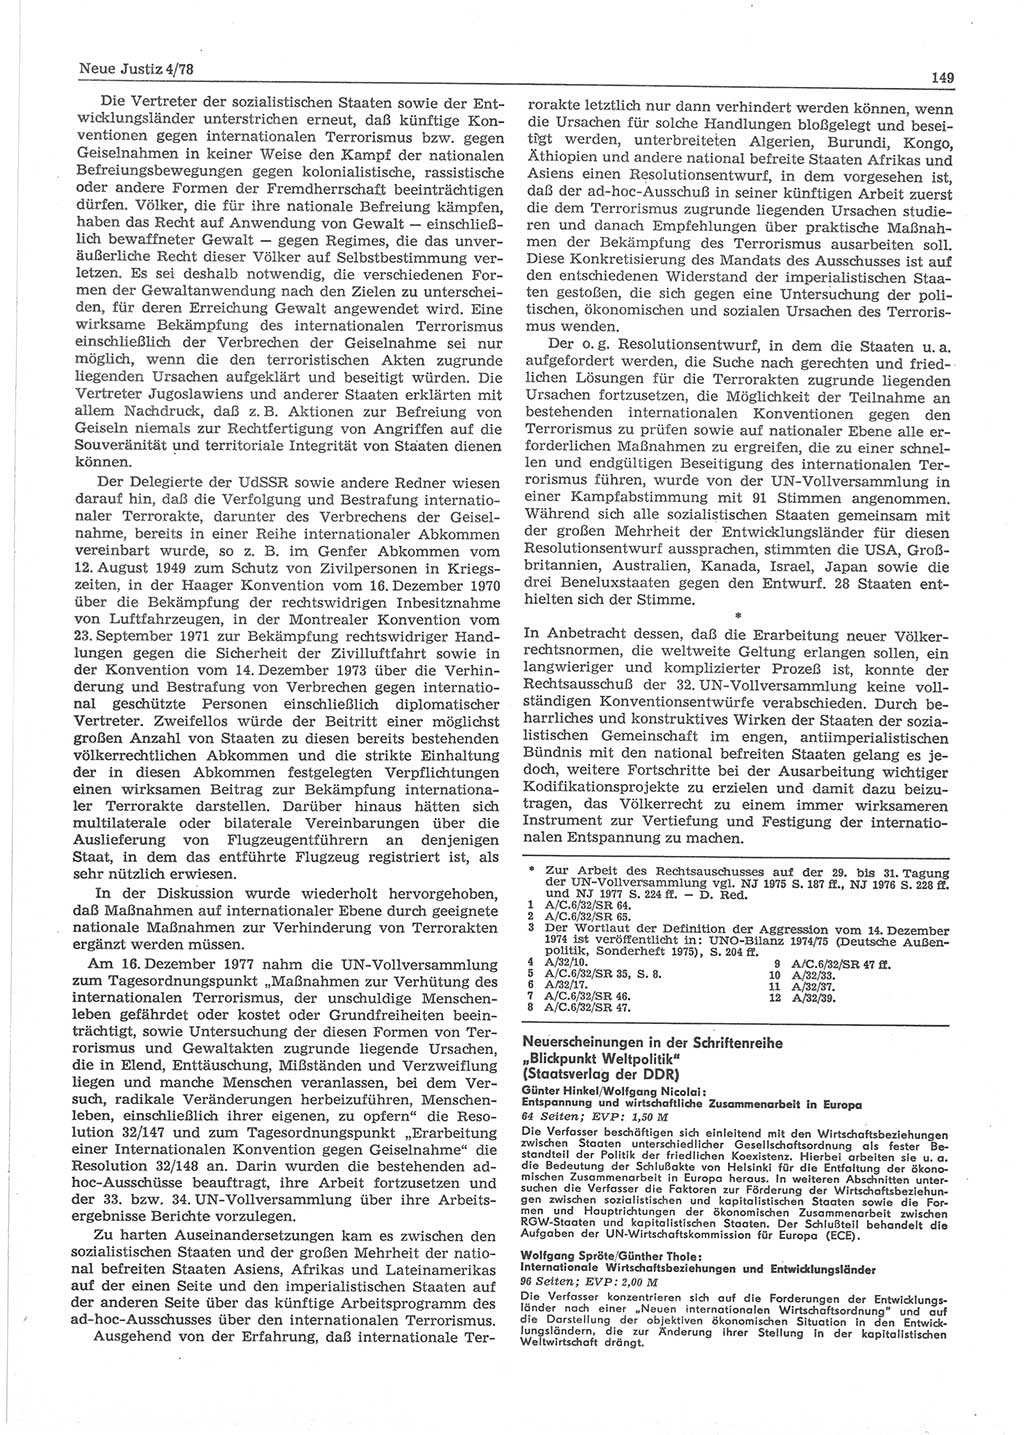 Neue Justiz (NJ), Zeitschrift für sozialistisches Recht und Gesetzlichkeit [Deutsche Demokratische Republik (DDR)], 32. Jahrgang 1978, Seite 149 (NJ DDR 1978, S. 149)